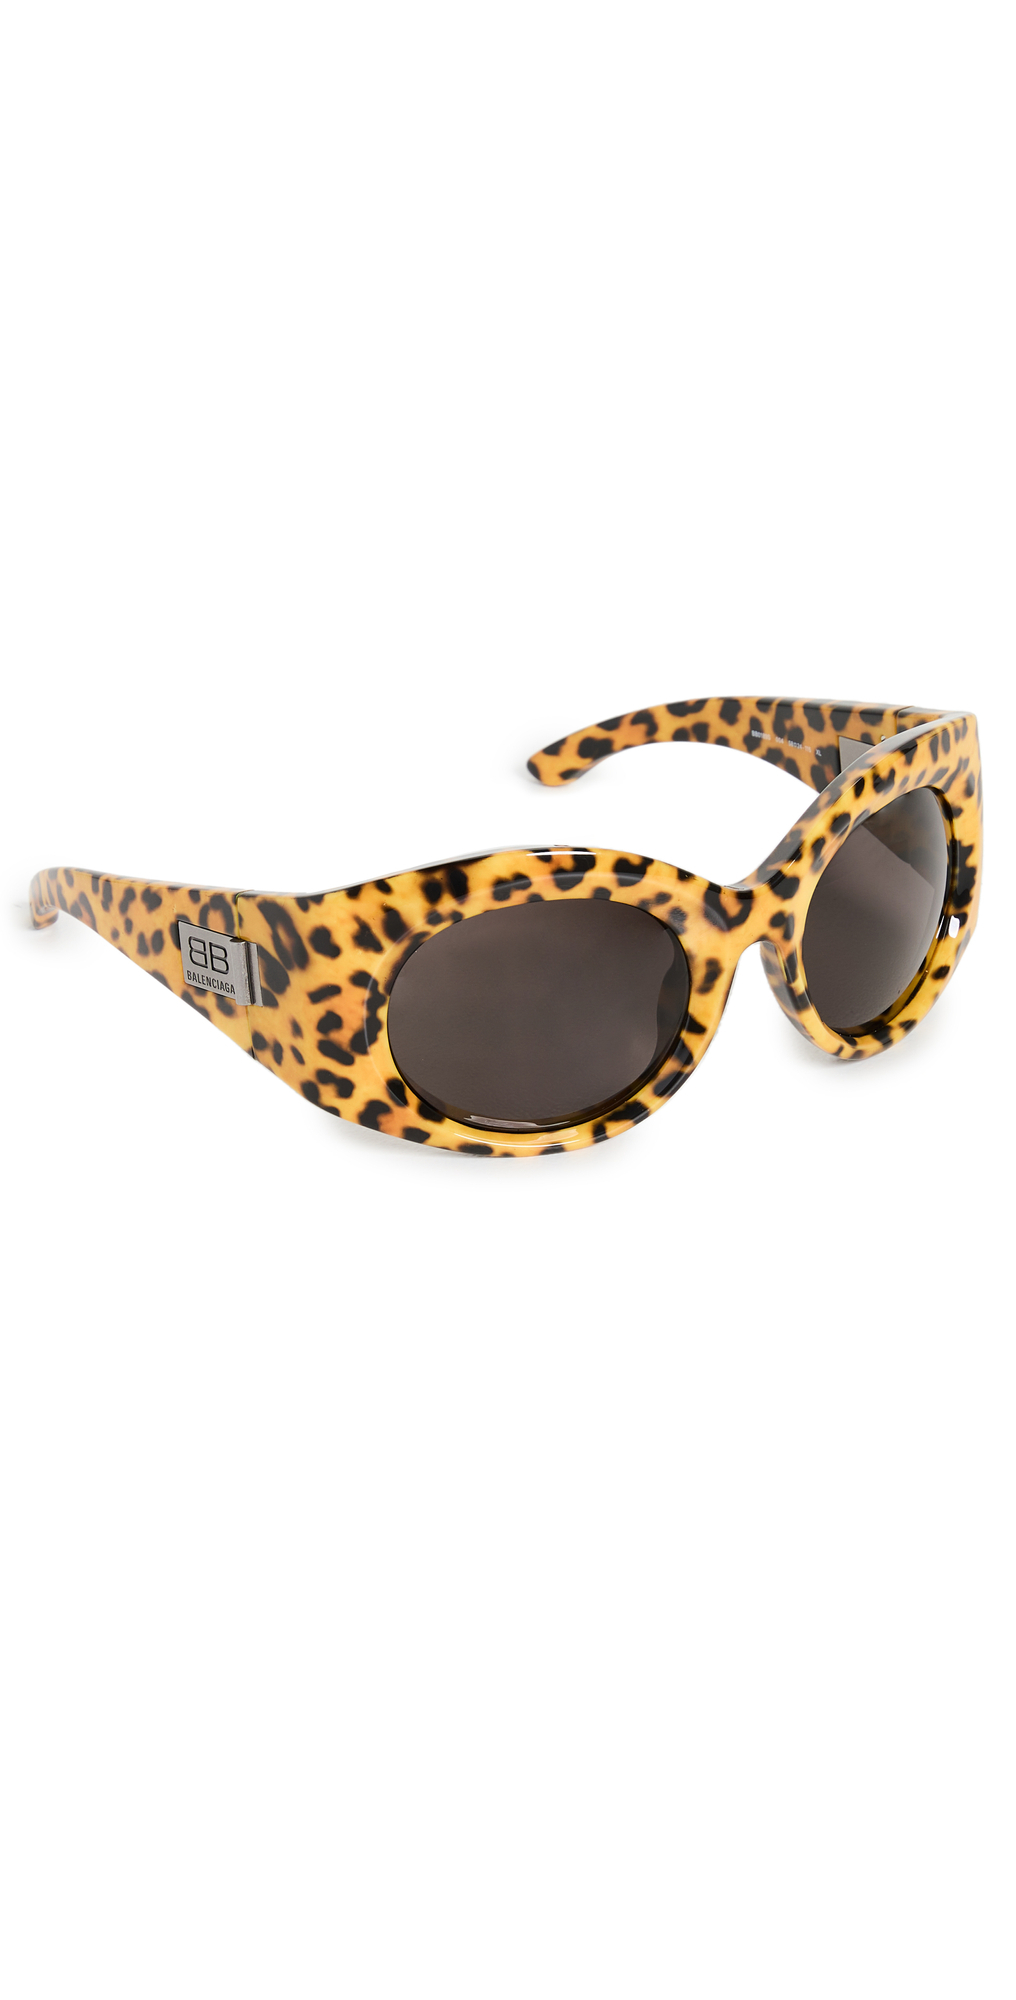 Balenciaga Bold Sunglasses in leopard